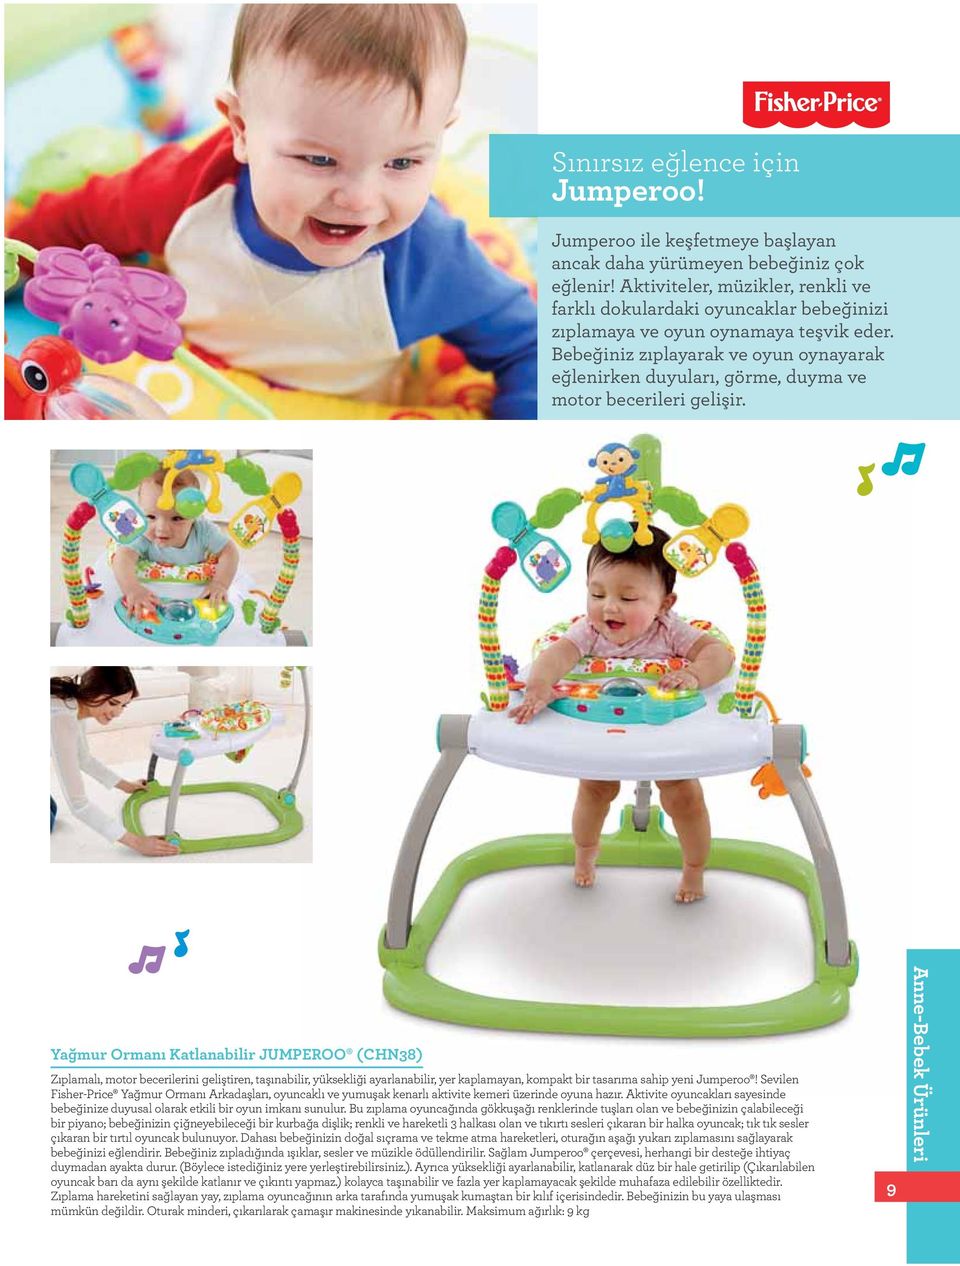 Bebeğiniz zıplayarak ve oyun oynayarak eğlenirken duyuları, görme, duyma ve motor becerileri gelişir.